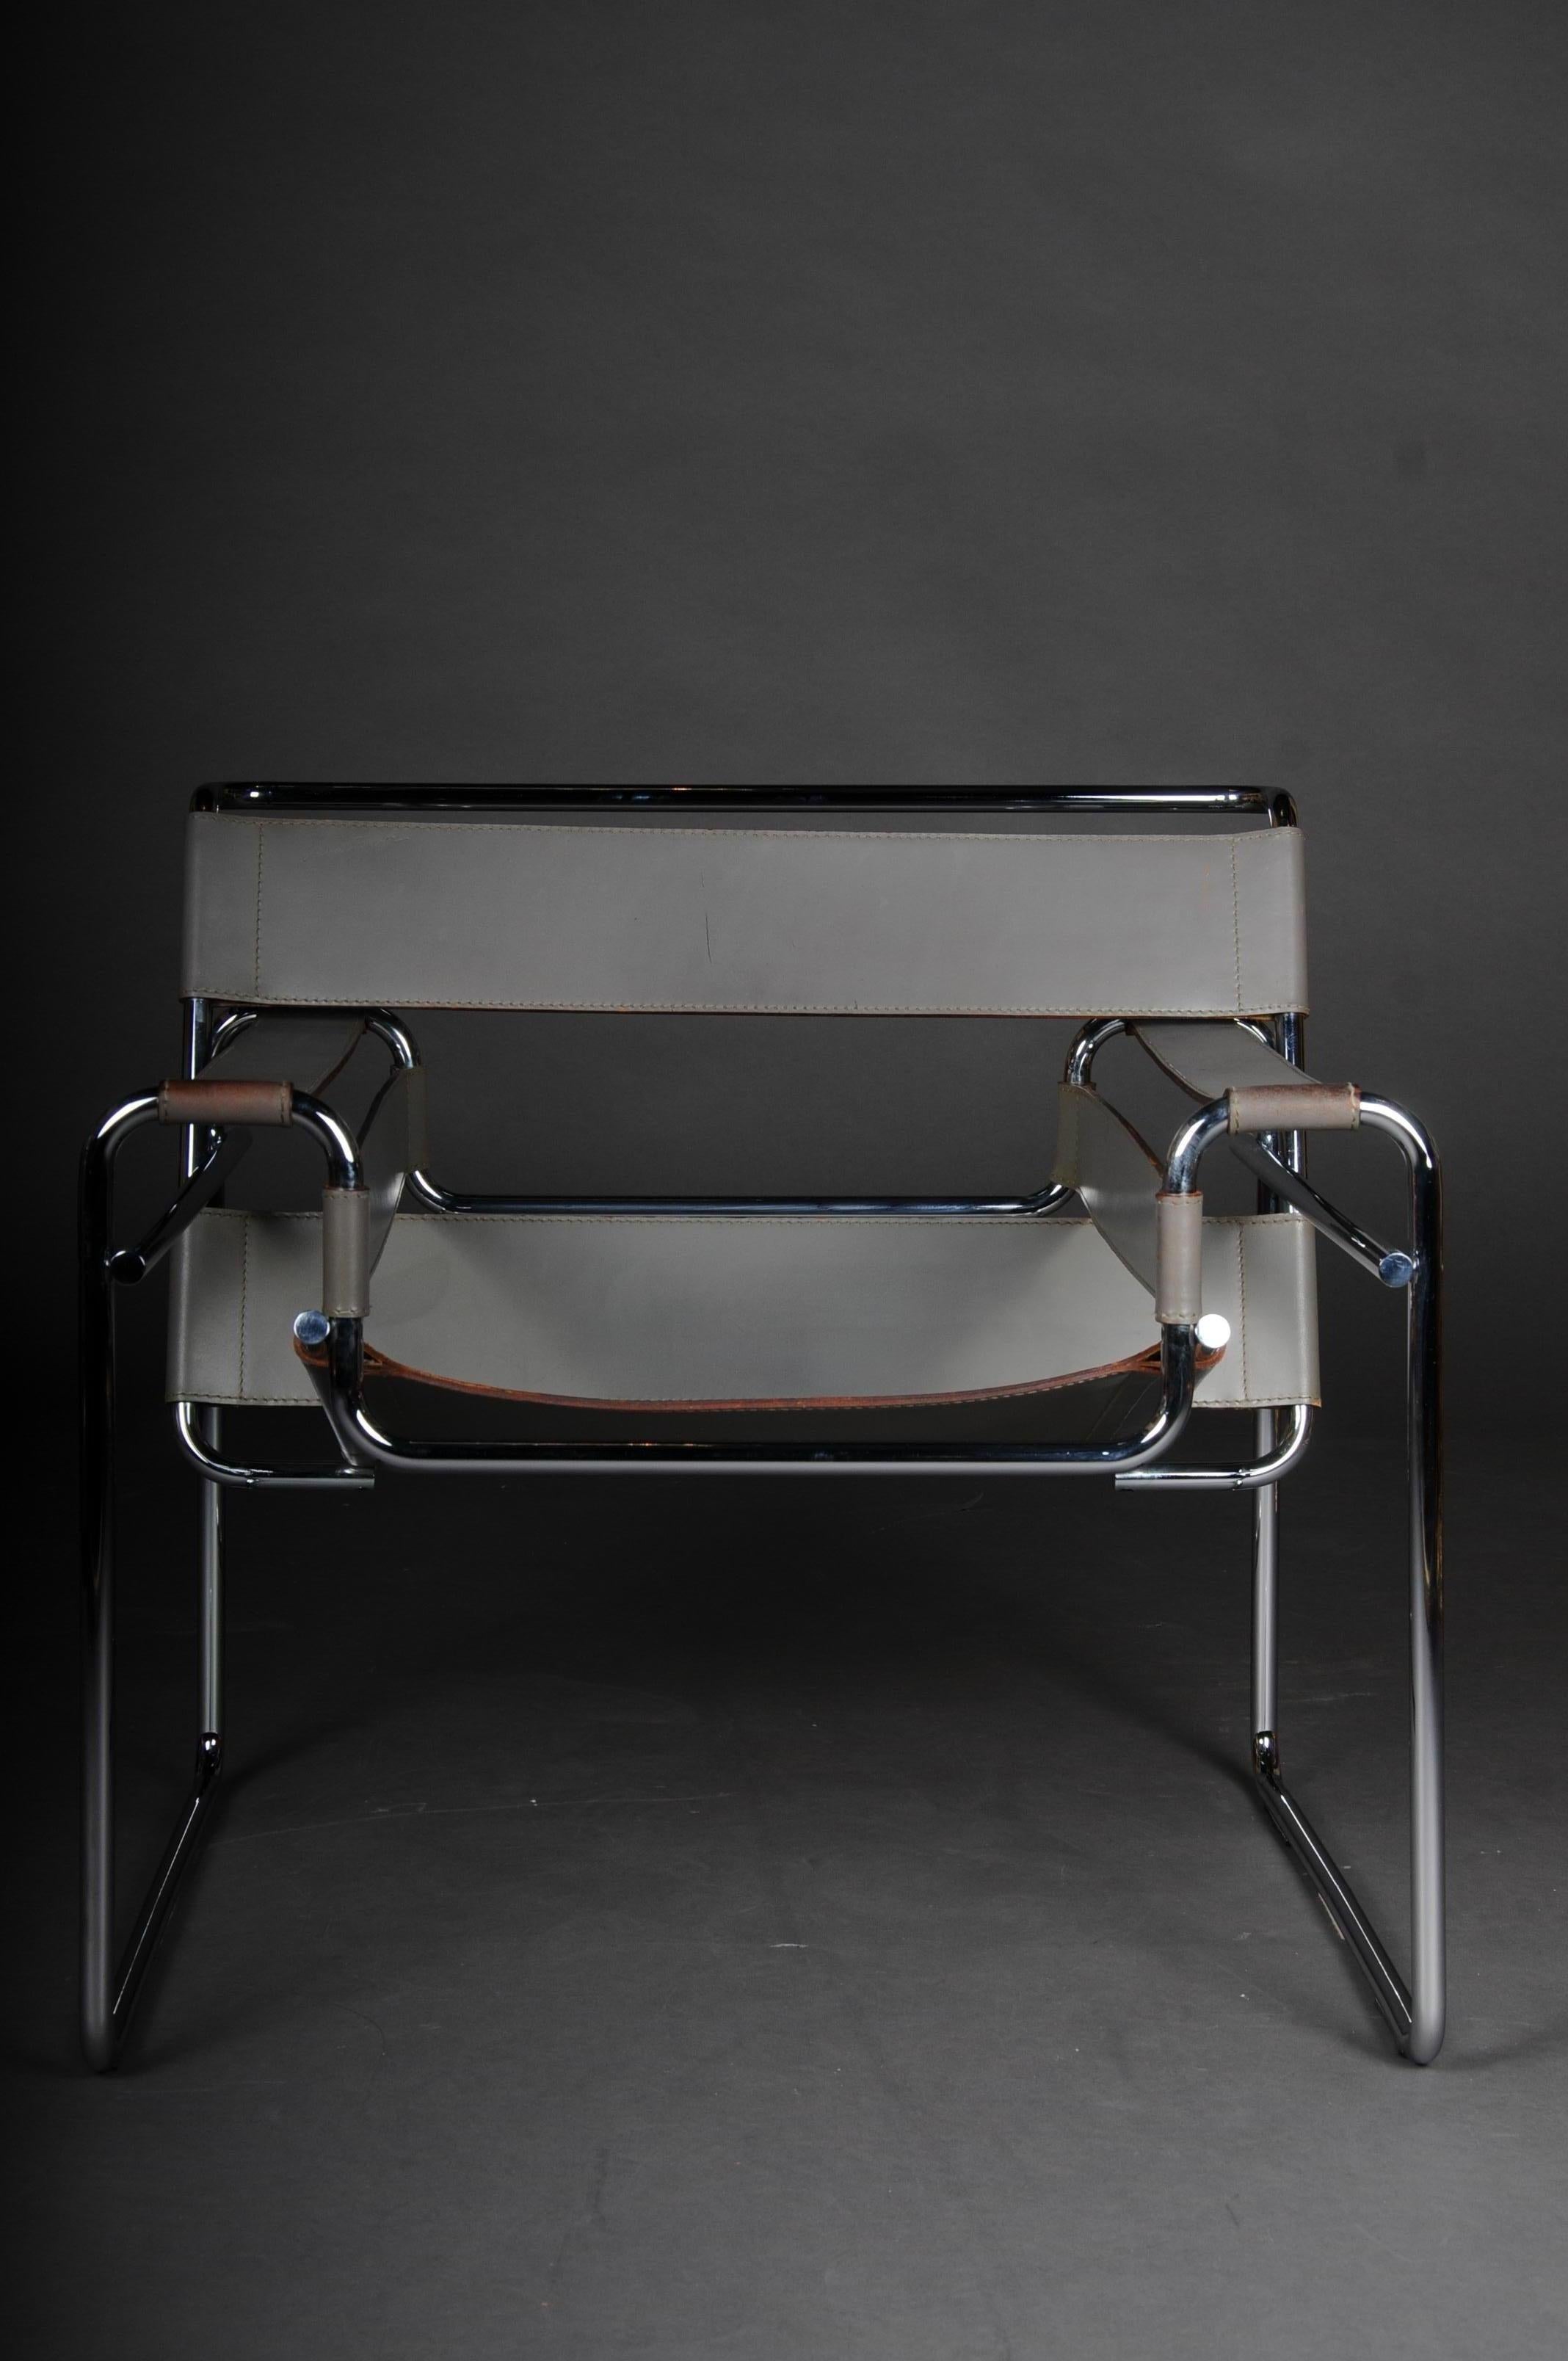 Fauteuil design / chaise Wassily Marcel Breuer / Knoll International

Modèle vintage en cuir de vachette gris, le fauteuil Wassily de 1925 conçu par Marcel Breuer au Bauhaus et produit aujourd'hui par Knoll, marque le début du design des meubles